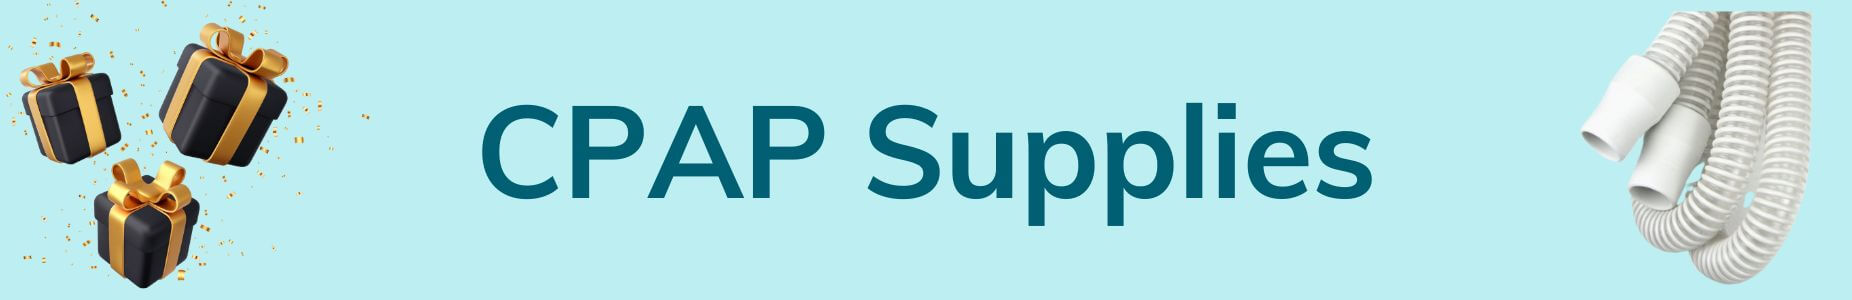 Shop CPAP Supplies